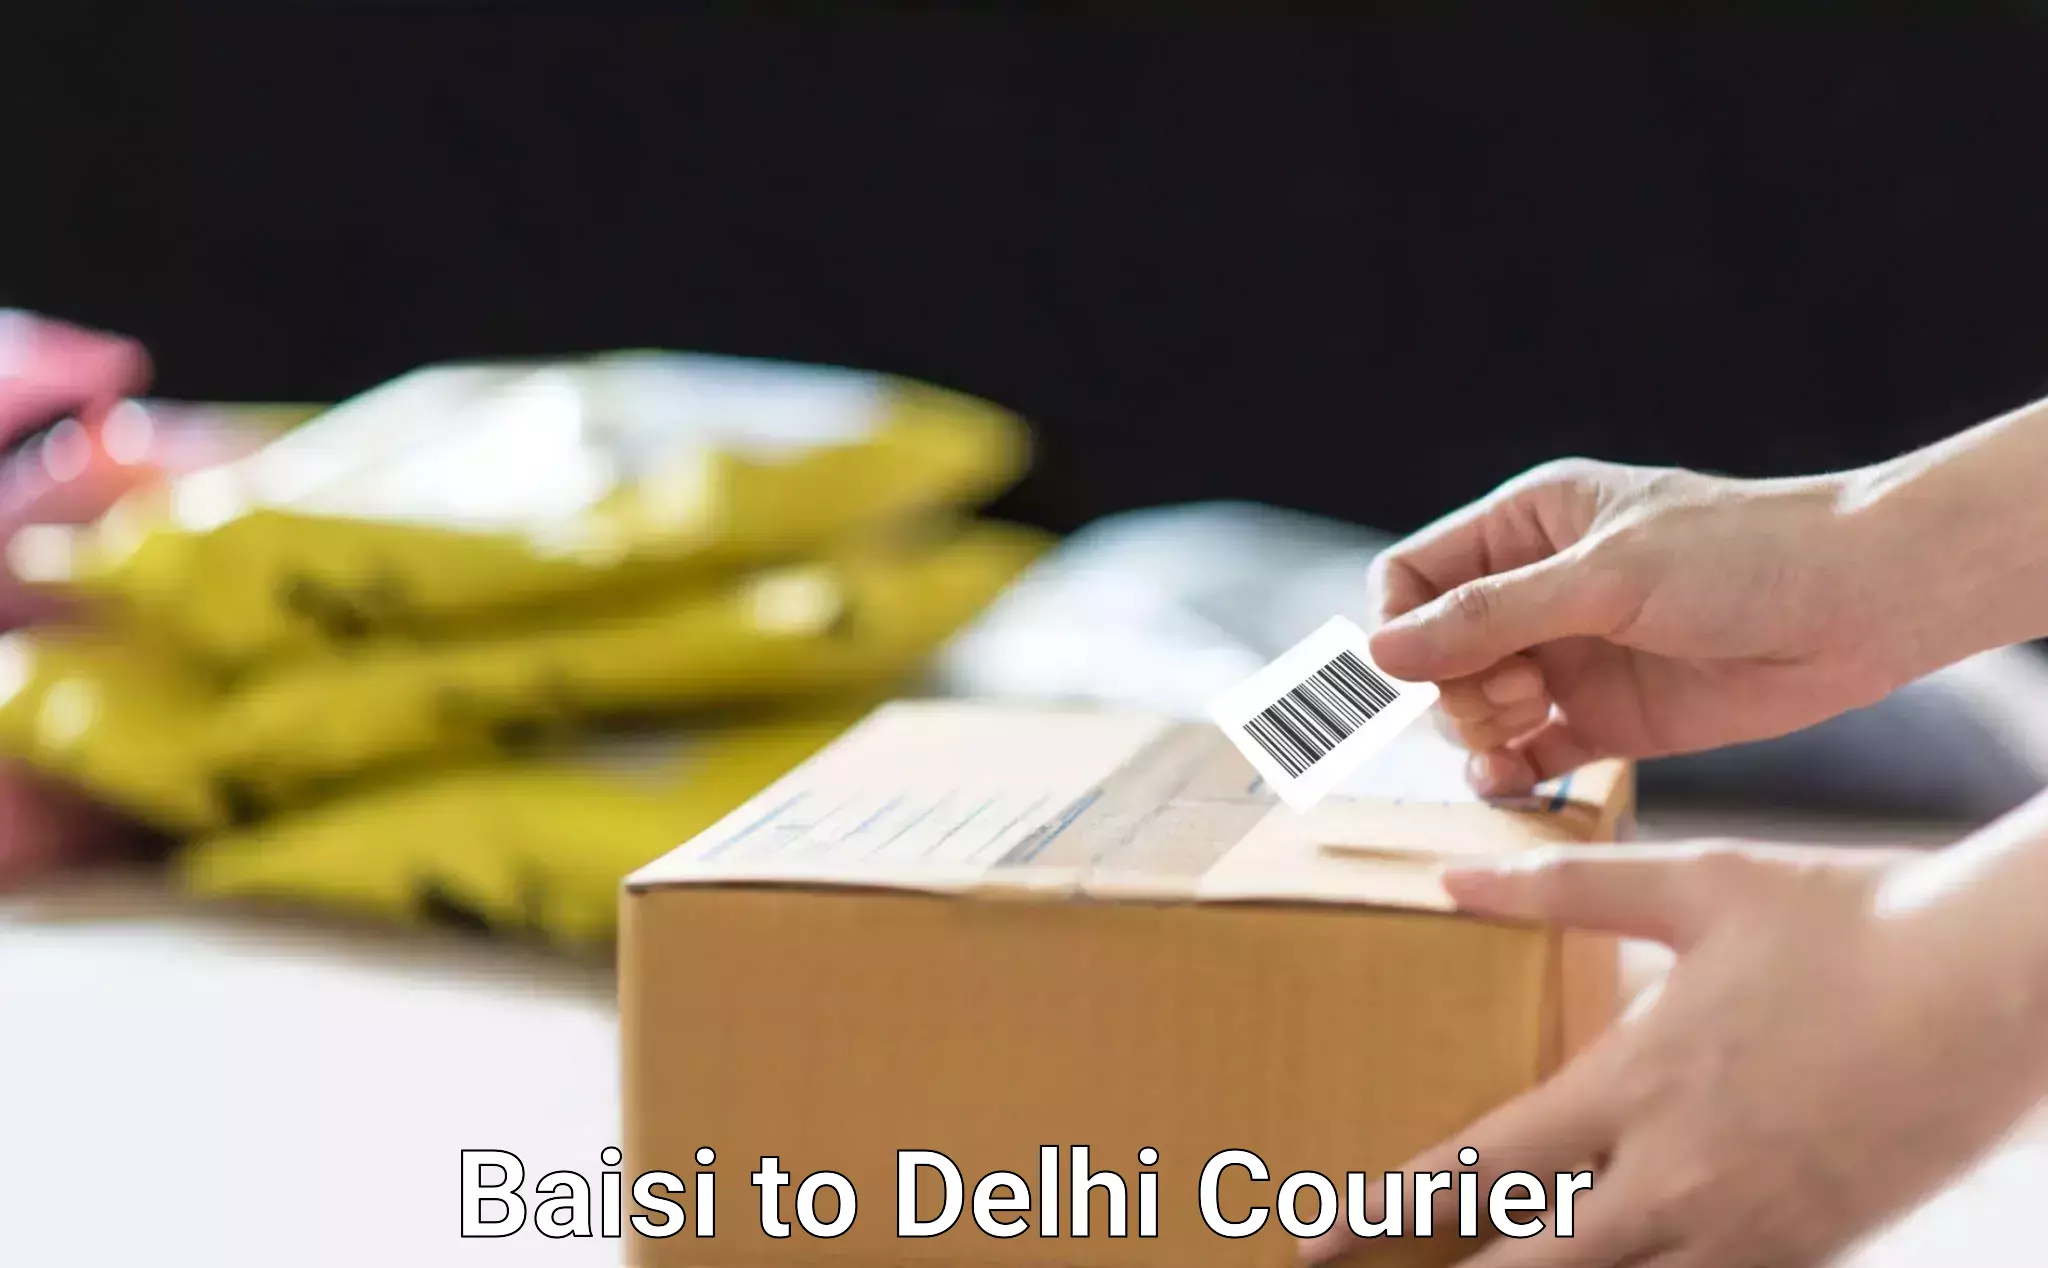 Furniture transport professionals Baisi to Delhi